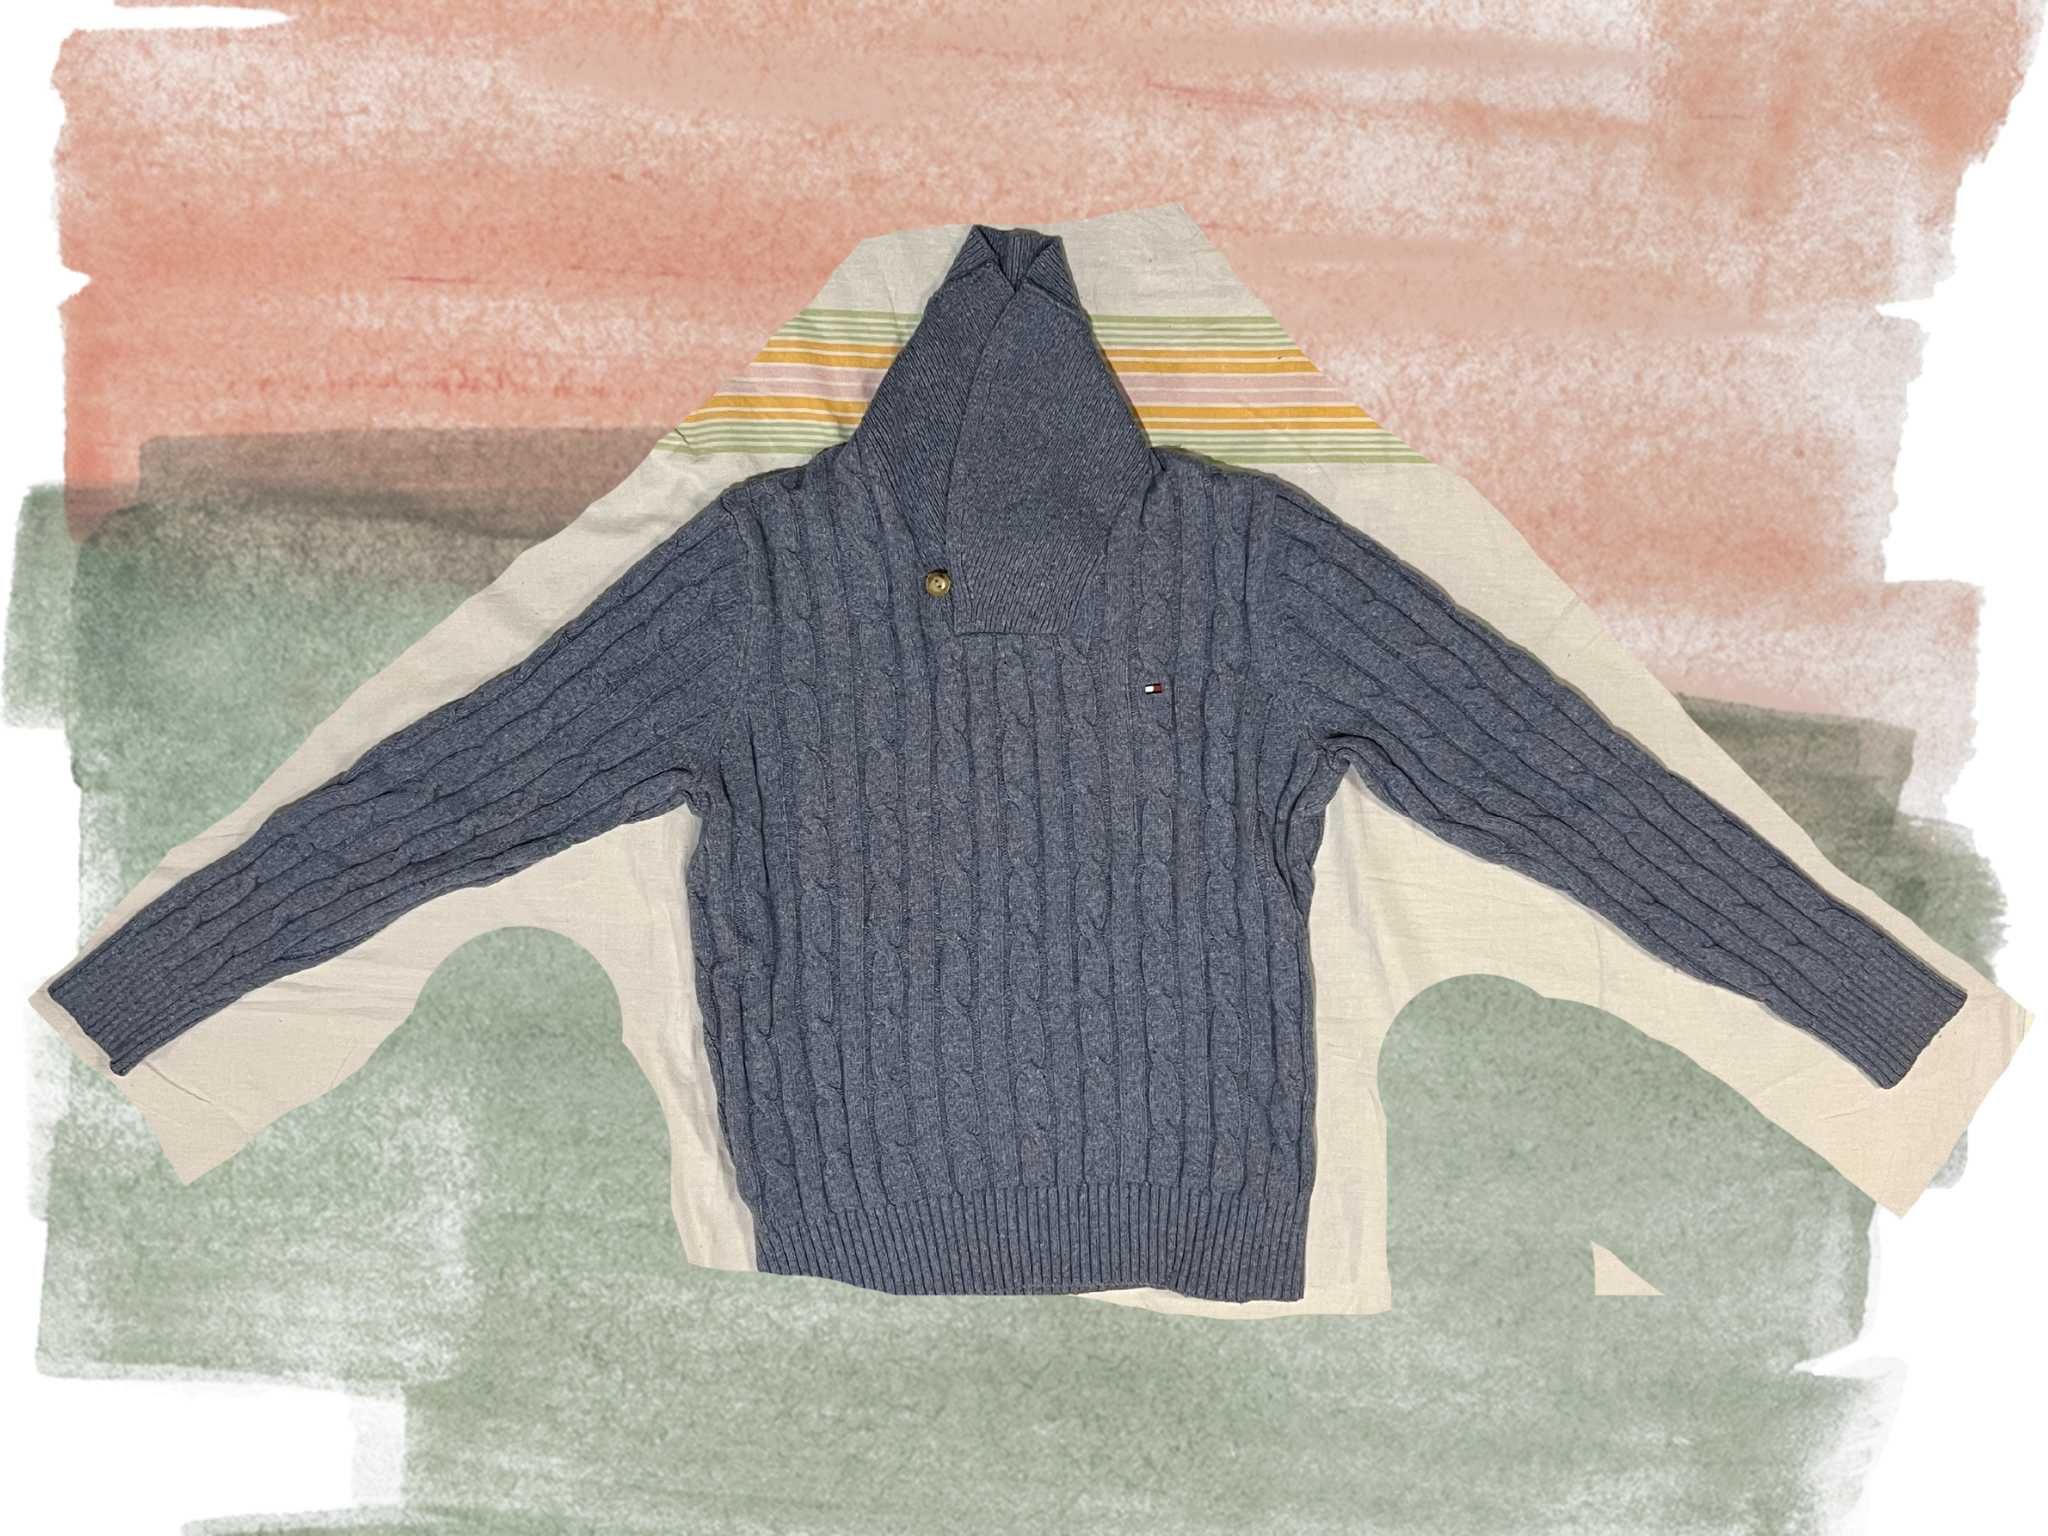 Vintage Мъжки Пуловери Tommy Hilfiger, размери М\XL\XXL.